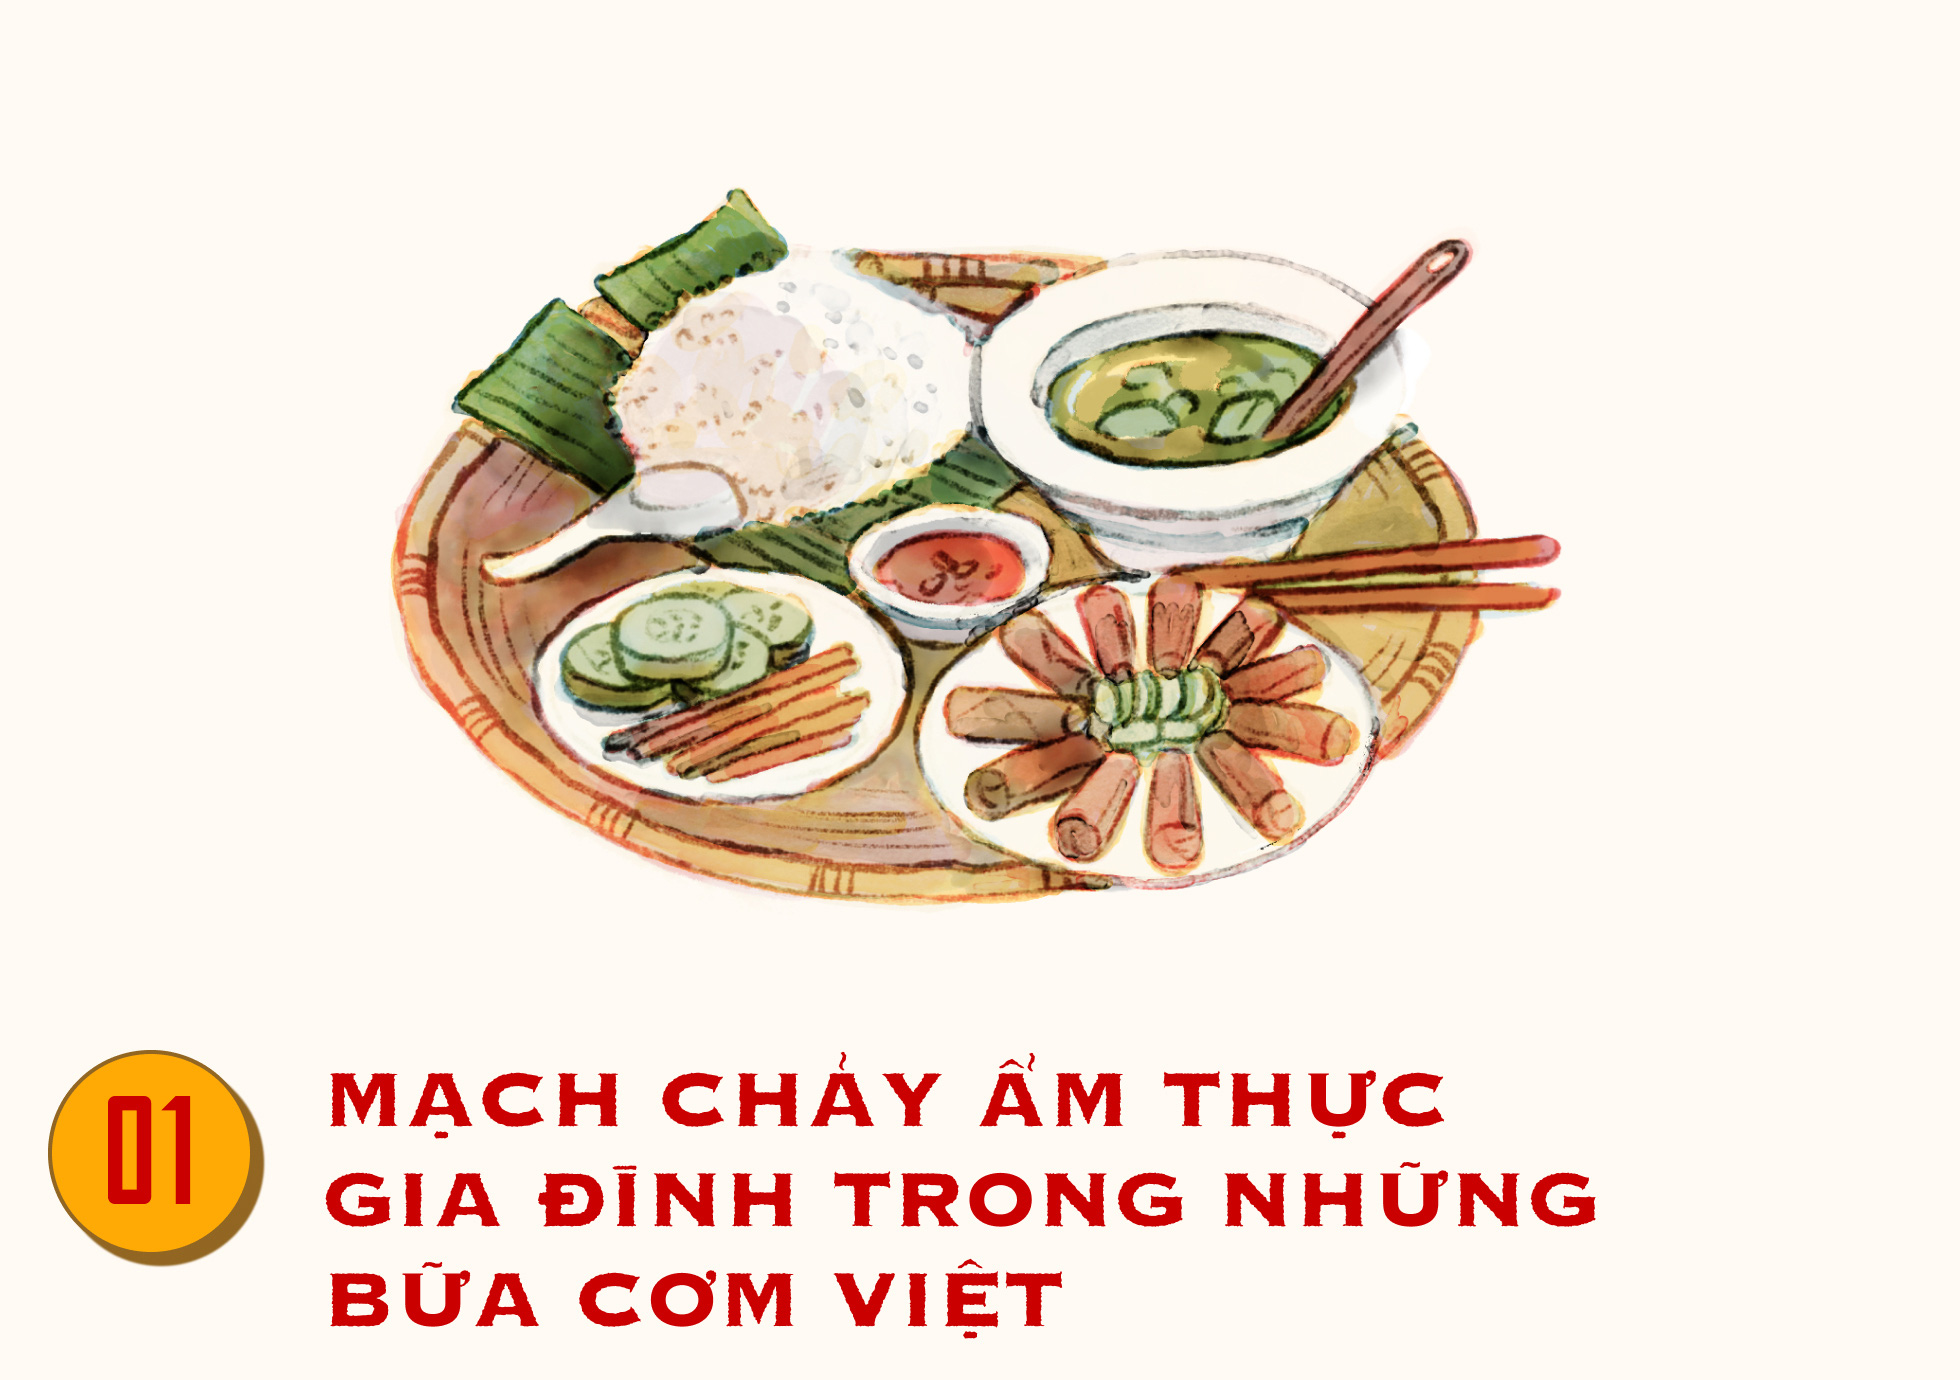 Nếp nhà là truyền thống văn hóa đậm nét của người Việt. Đến với bức tranh về nếp nhà truyền thống, bạn sẽ được tìm hiểu những giá trị của văn hóa Việt qua những đường nét tuyệt đẹp của hình ảnh.